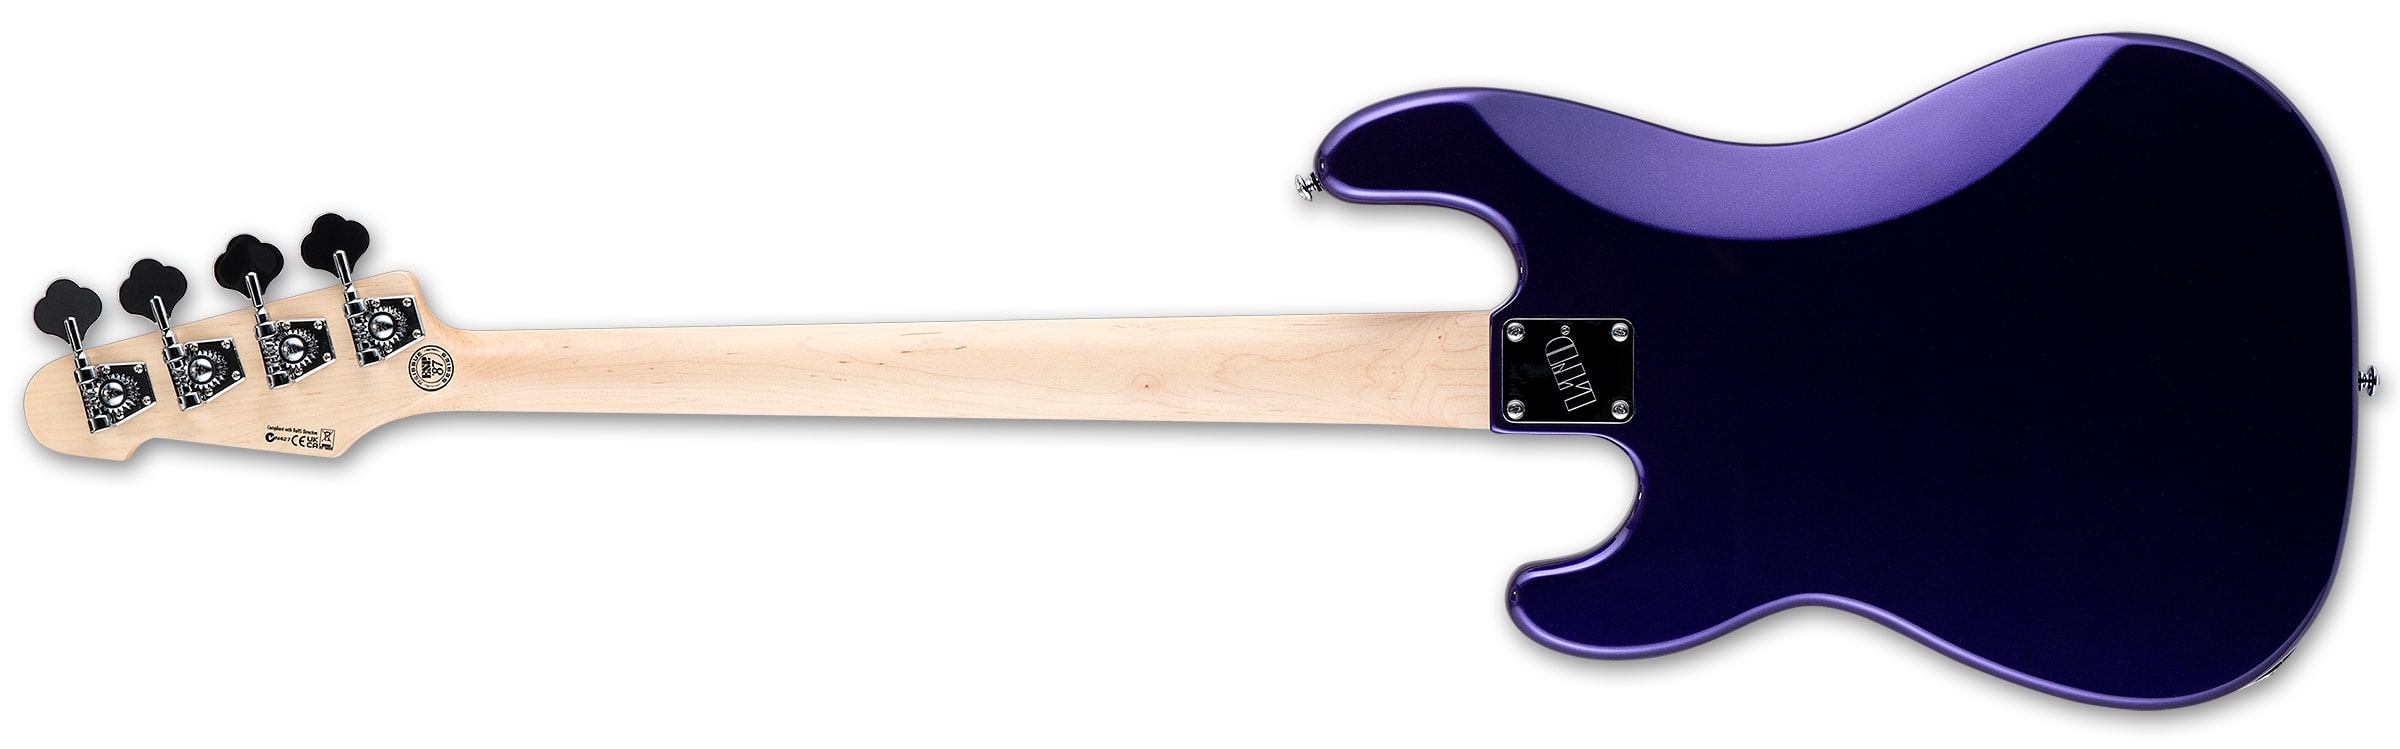 LTD Surveyor '87 Electric Bass, Dark Metallic Purple LSURVEYOR87DMP